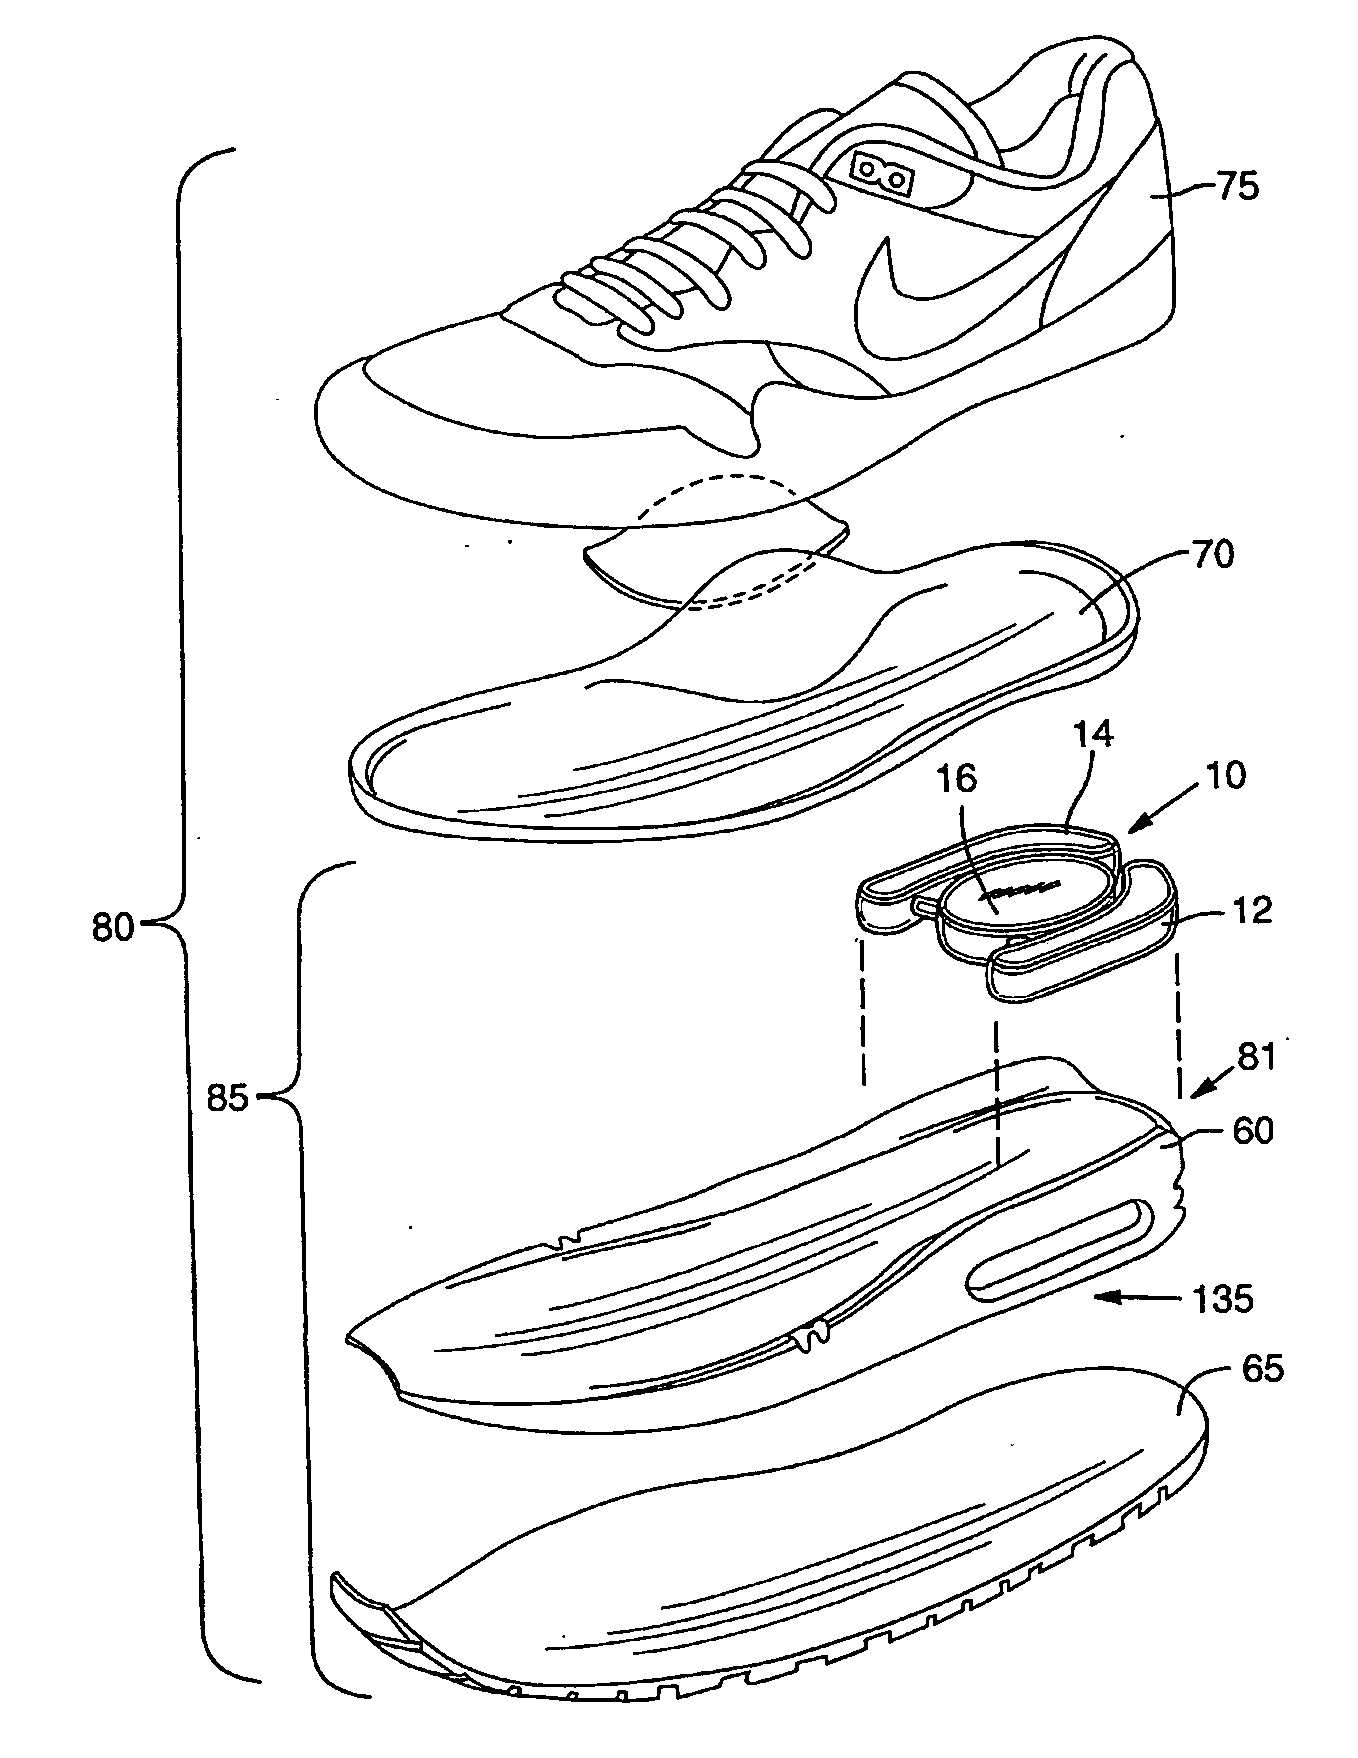 Variable support footwear using electrorheological or magnetorheological fluids